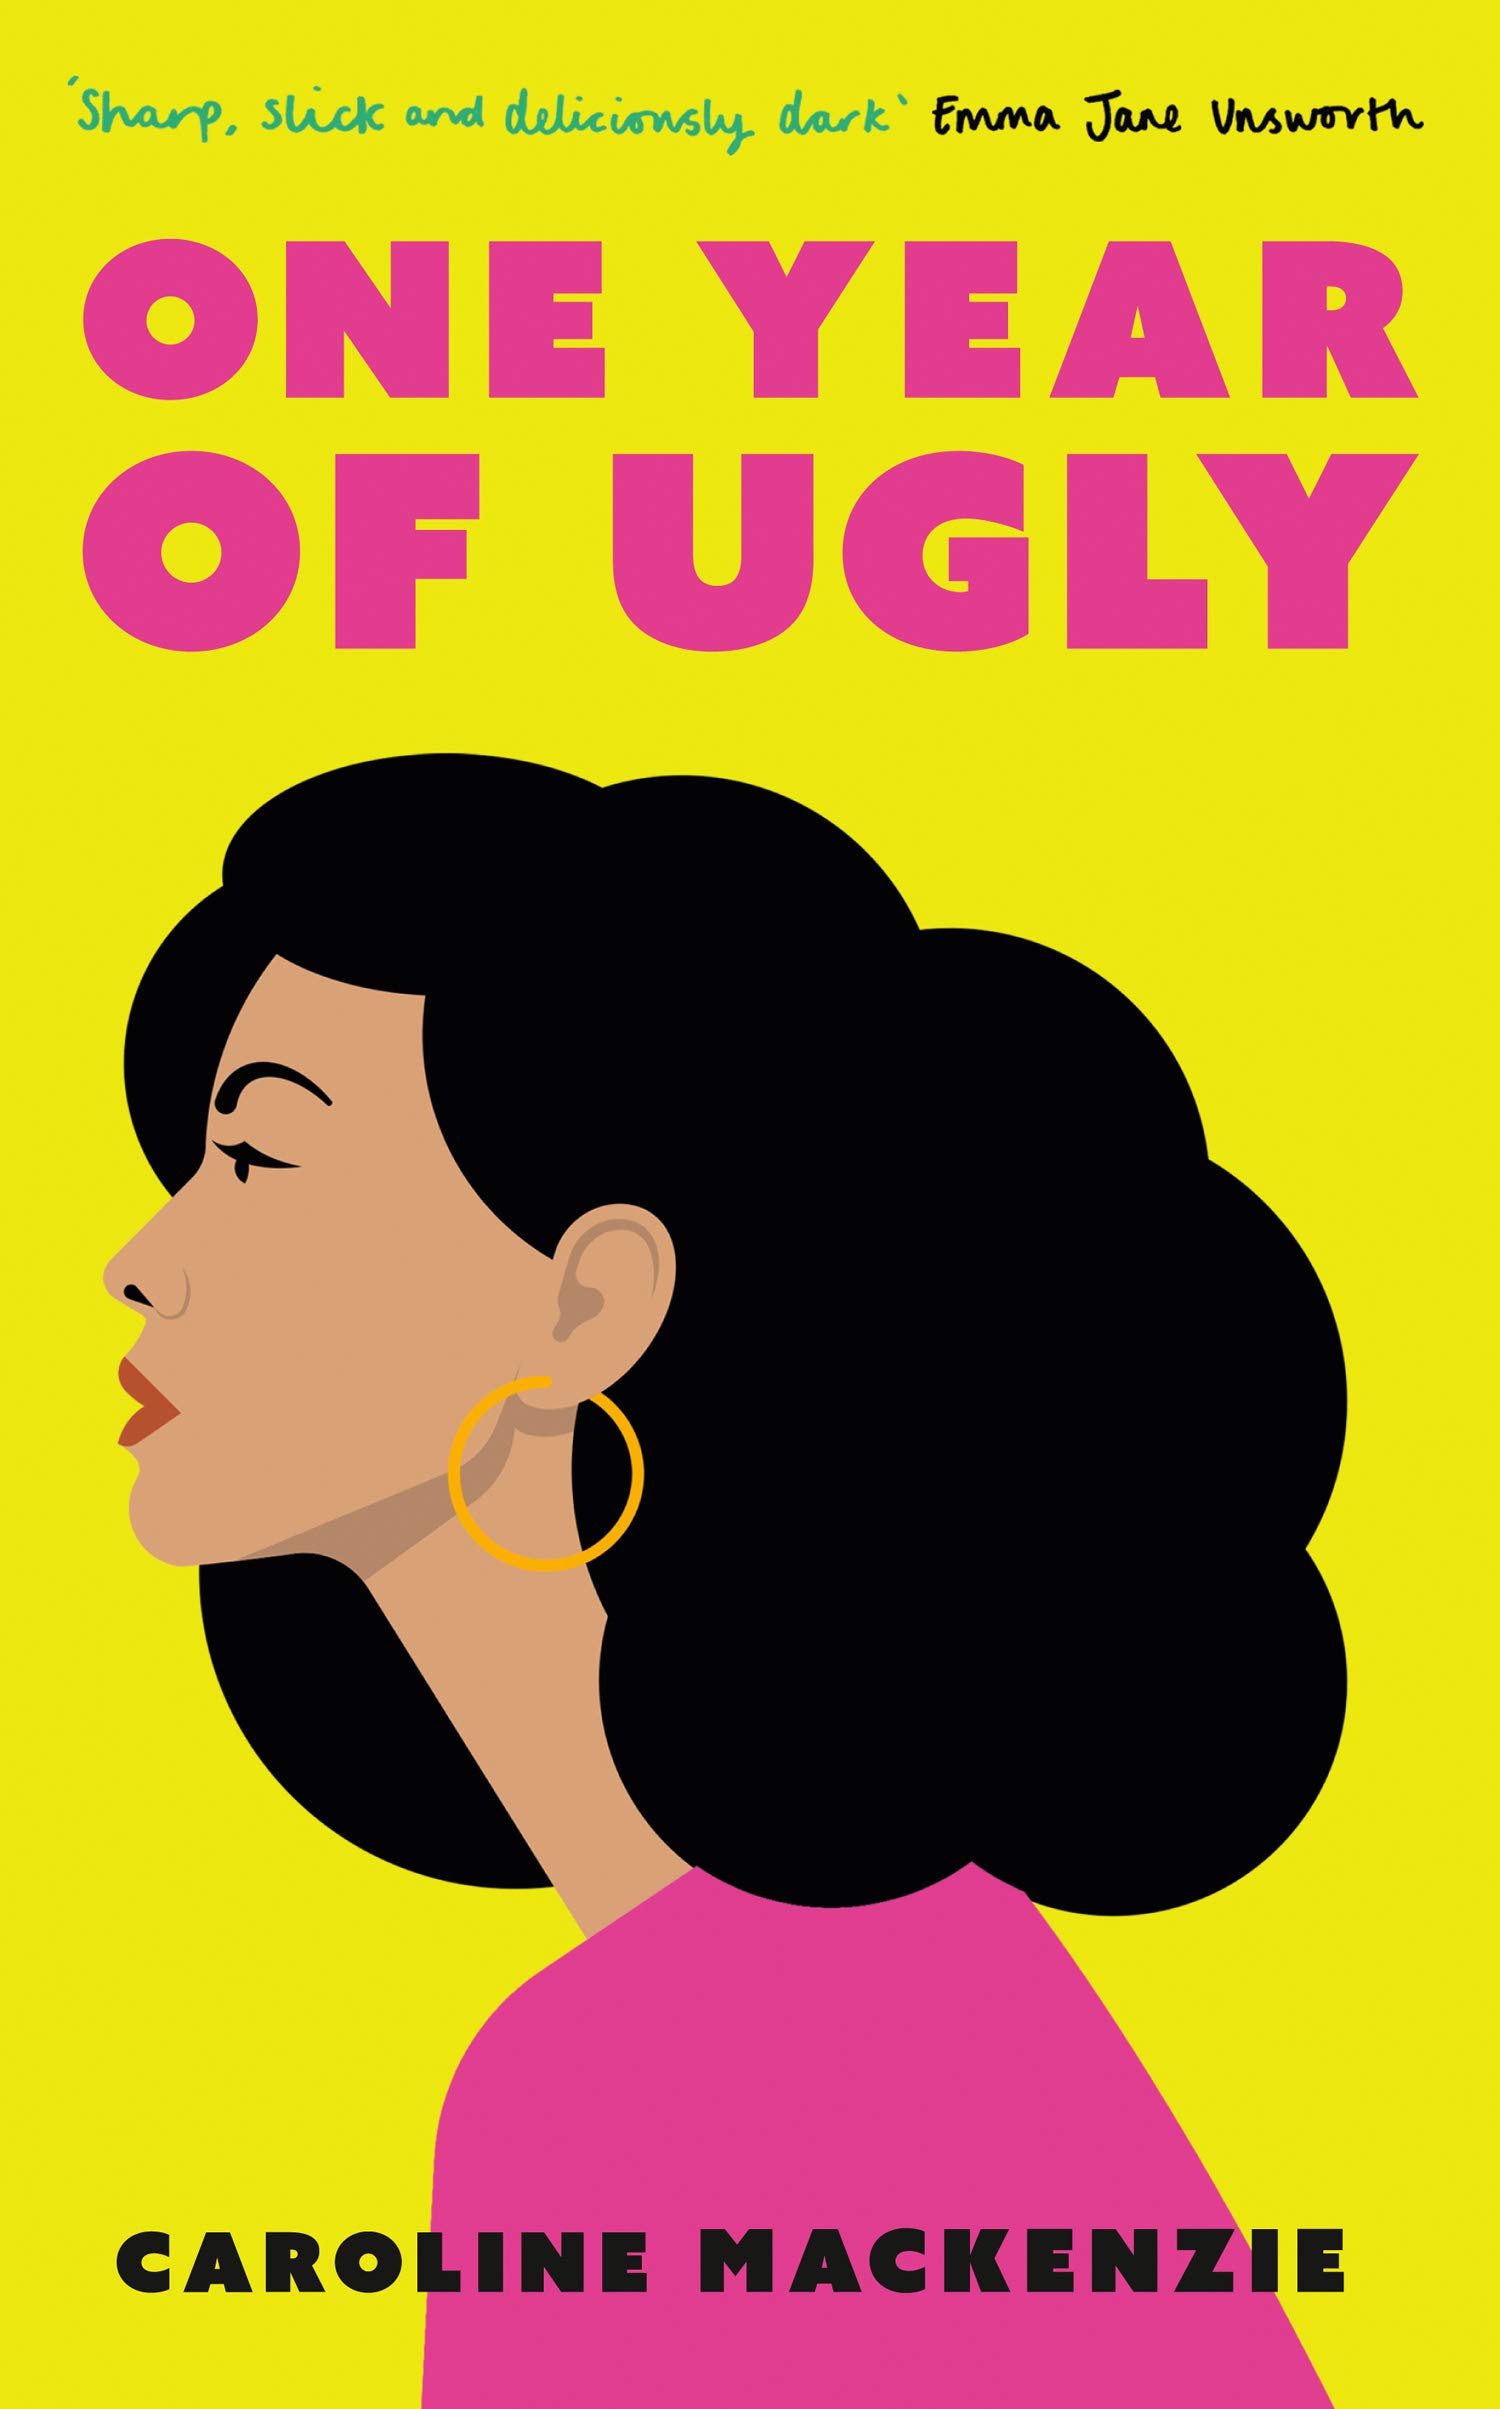 One Year of Ugly by Caroline Mackenzie